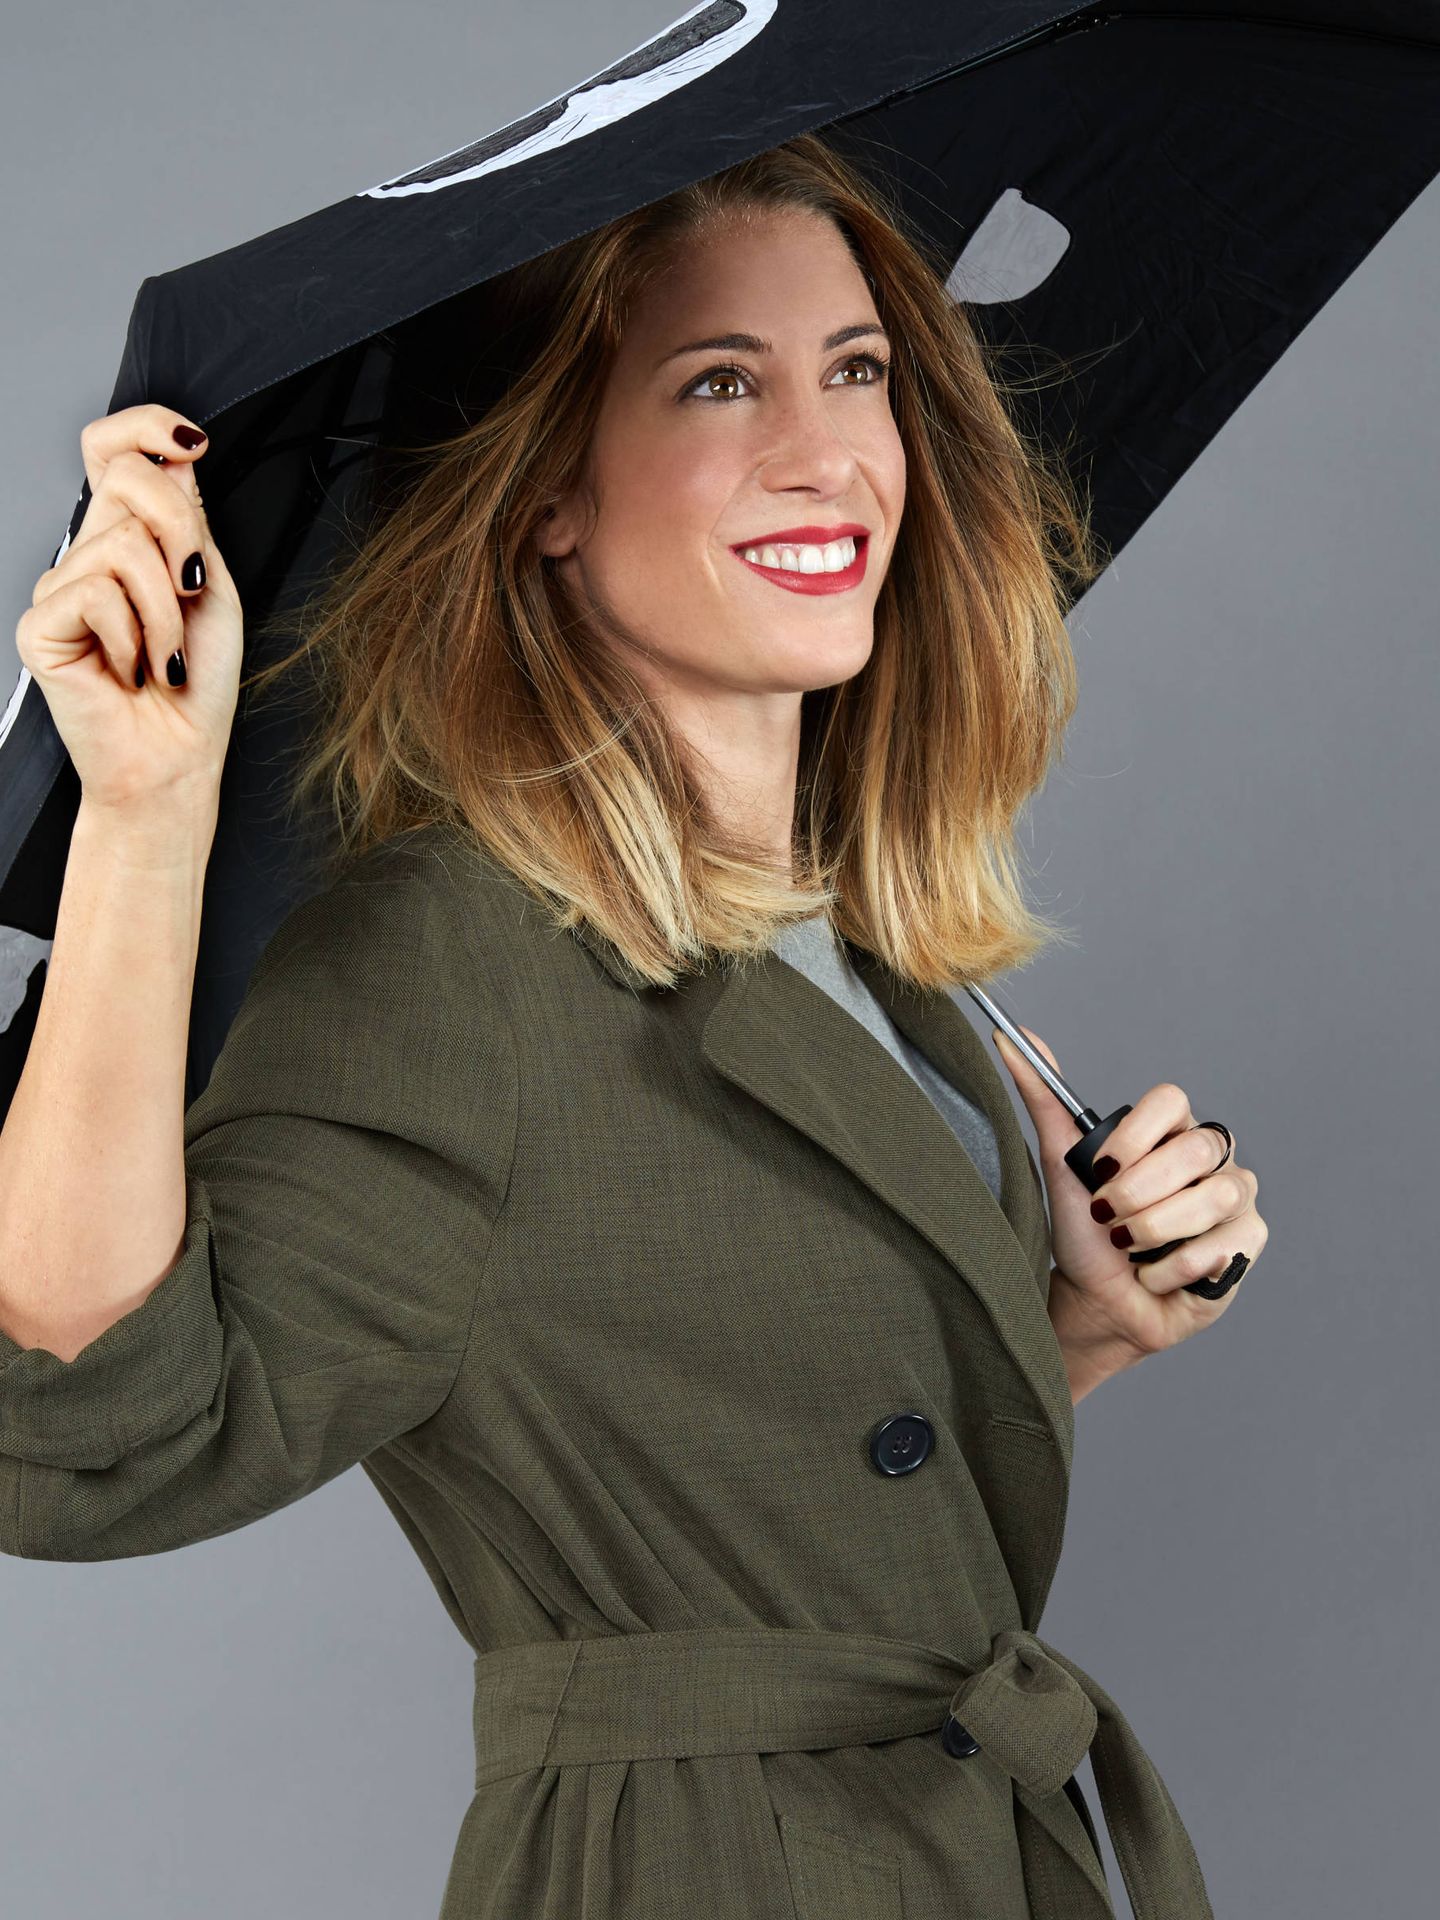 Isabel Zubiaurre apuesta por jersey de Zara, la misma marca de la gabardina y paraguas de Karl Lagerfeld. (Foto: Olga Moreno)